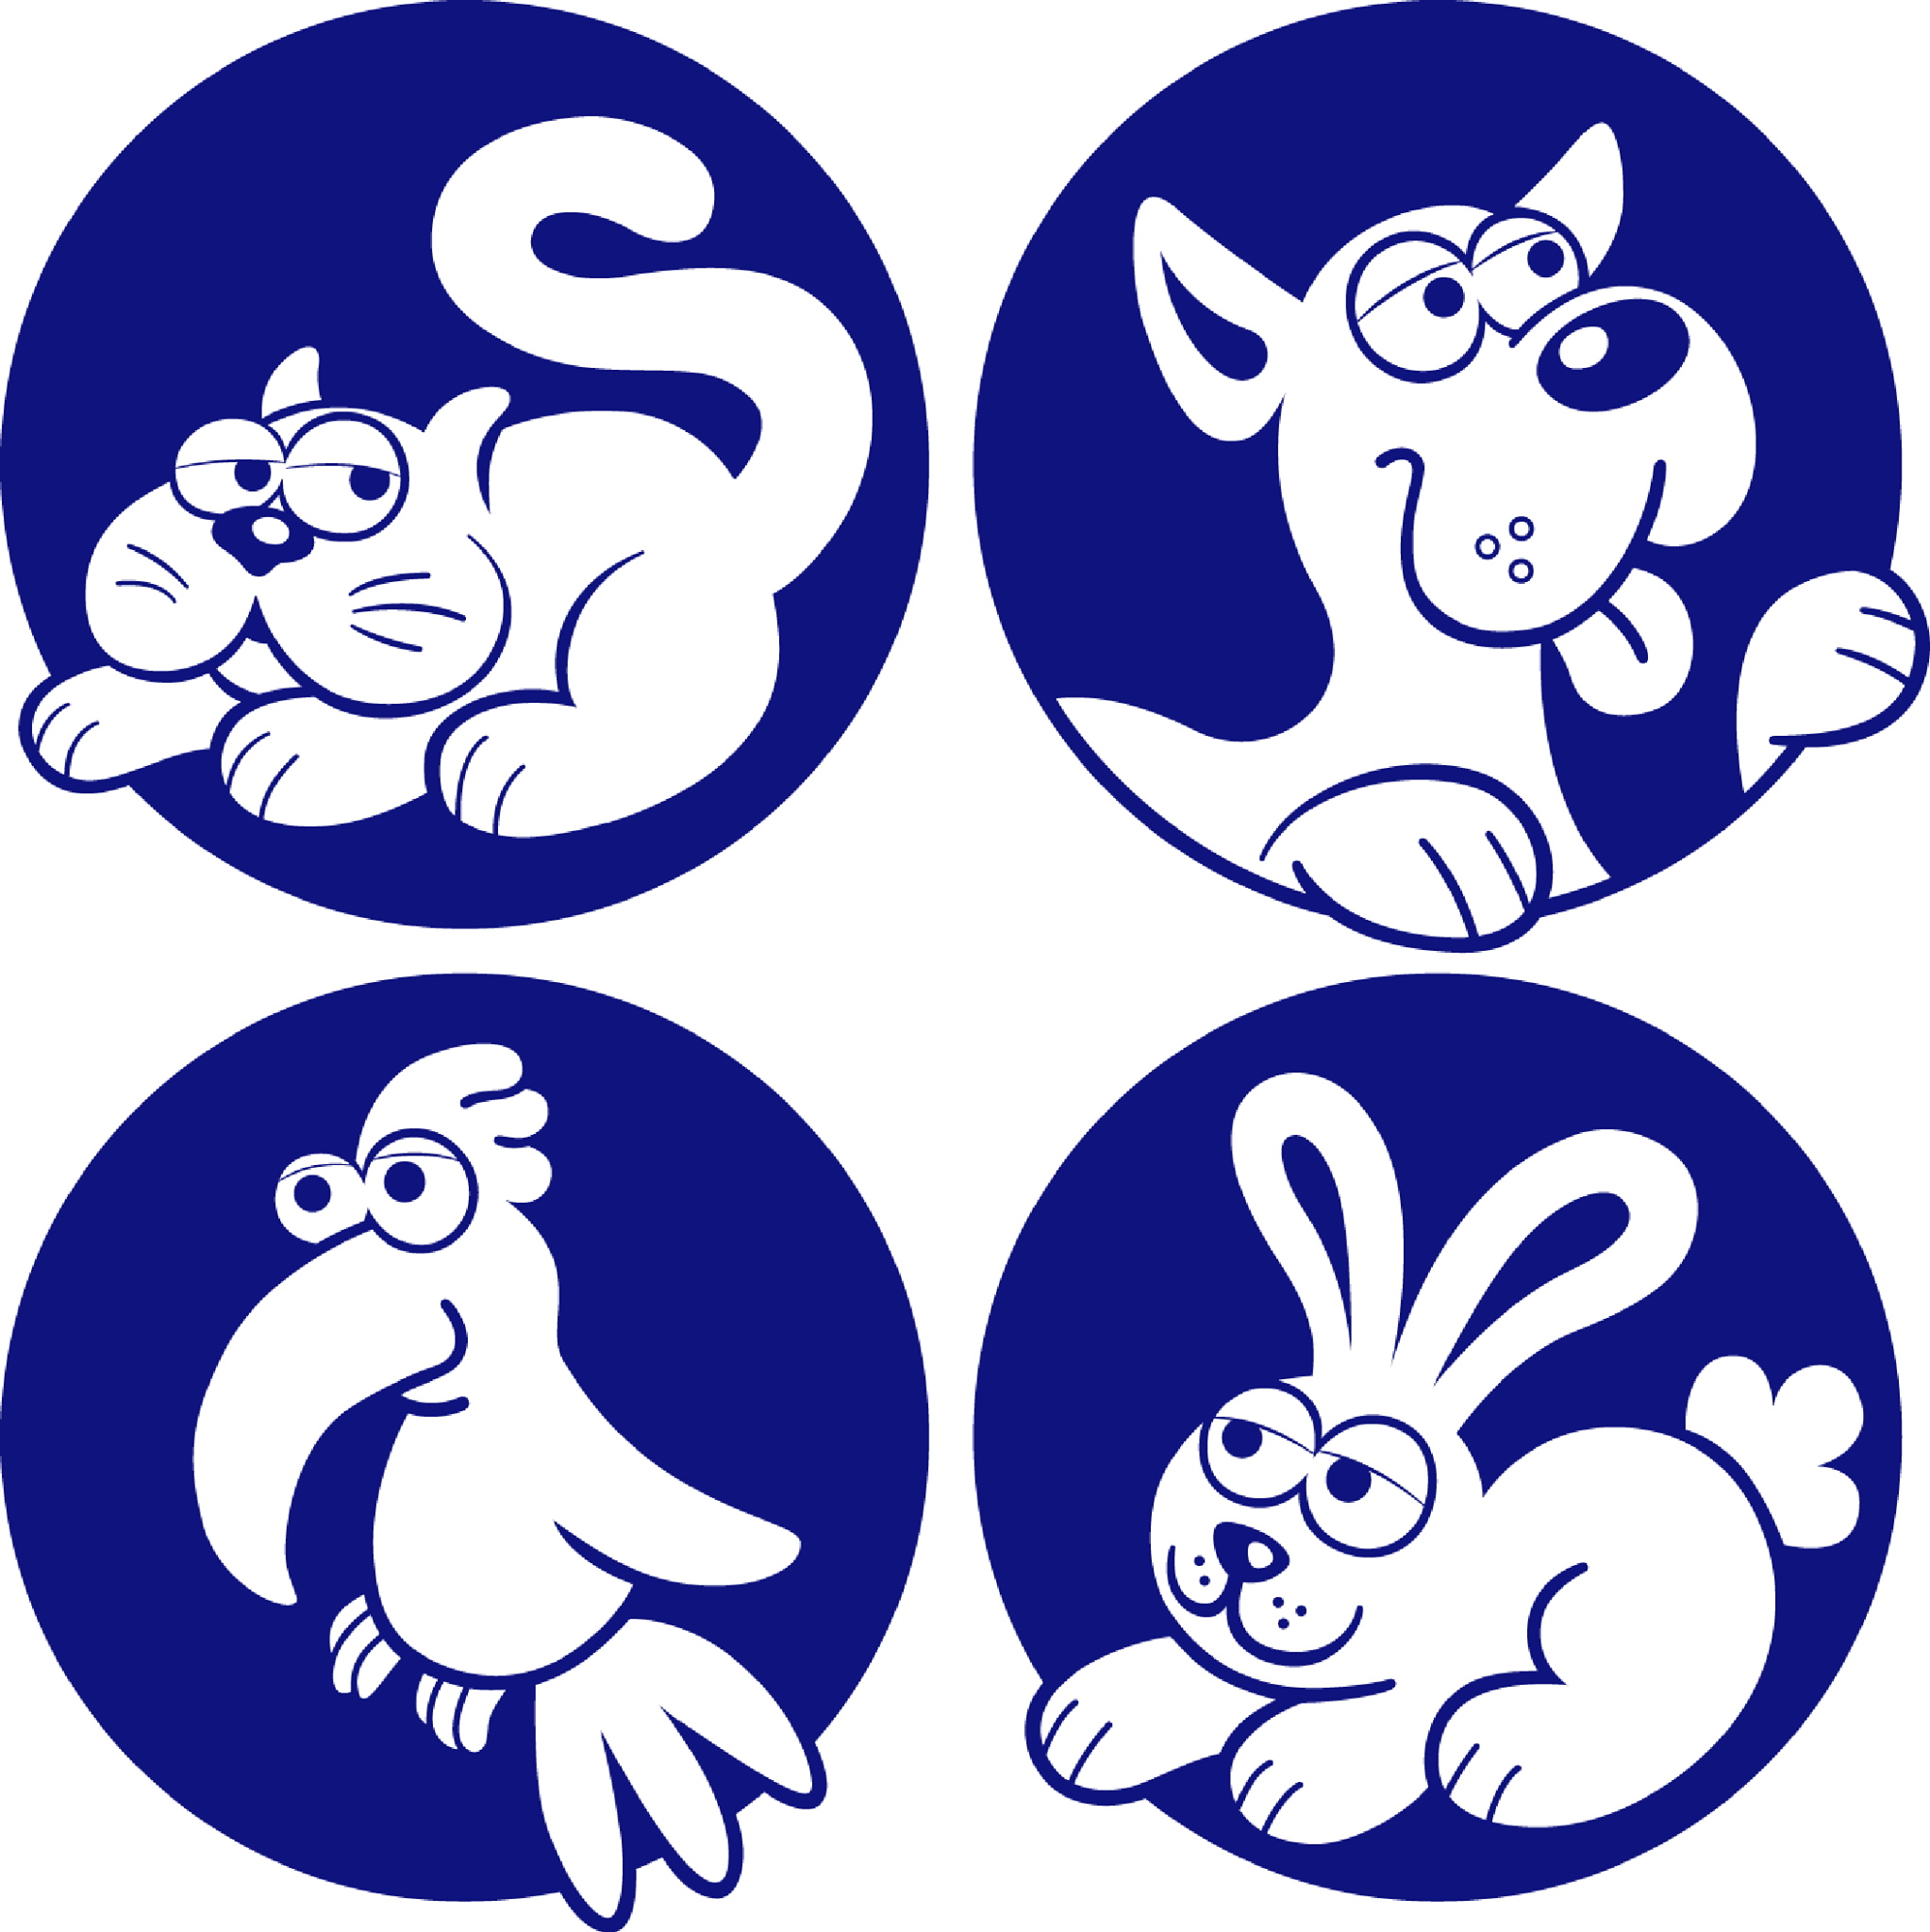 Company logo of Soldan's Pet Supplies